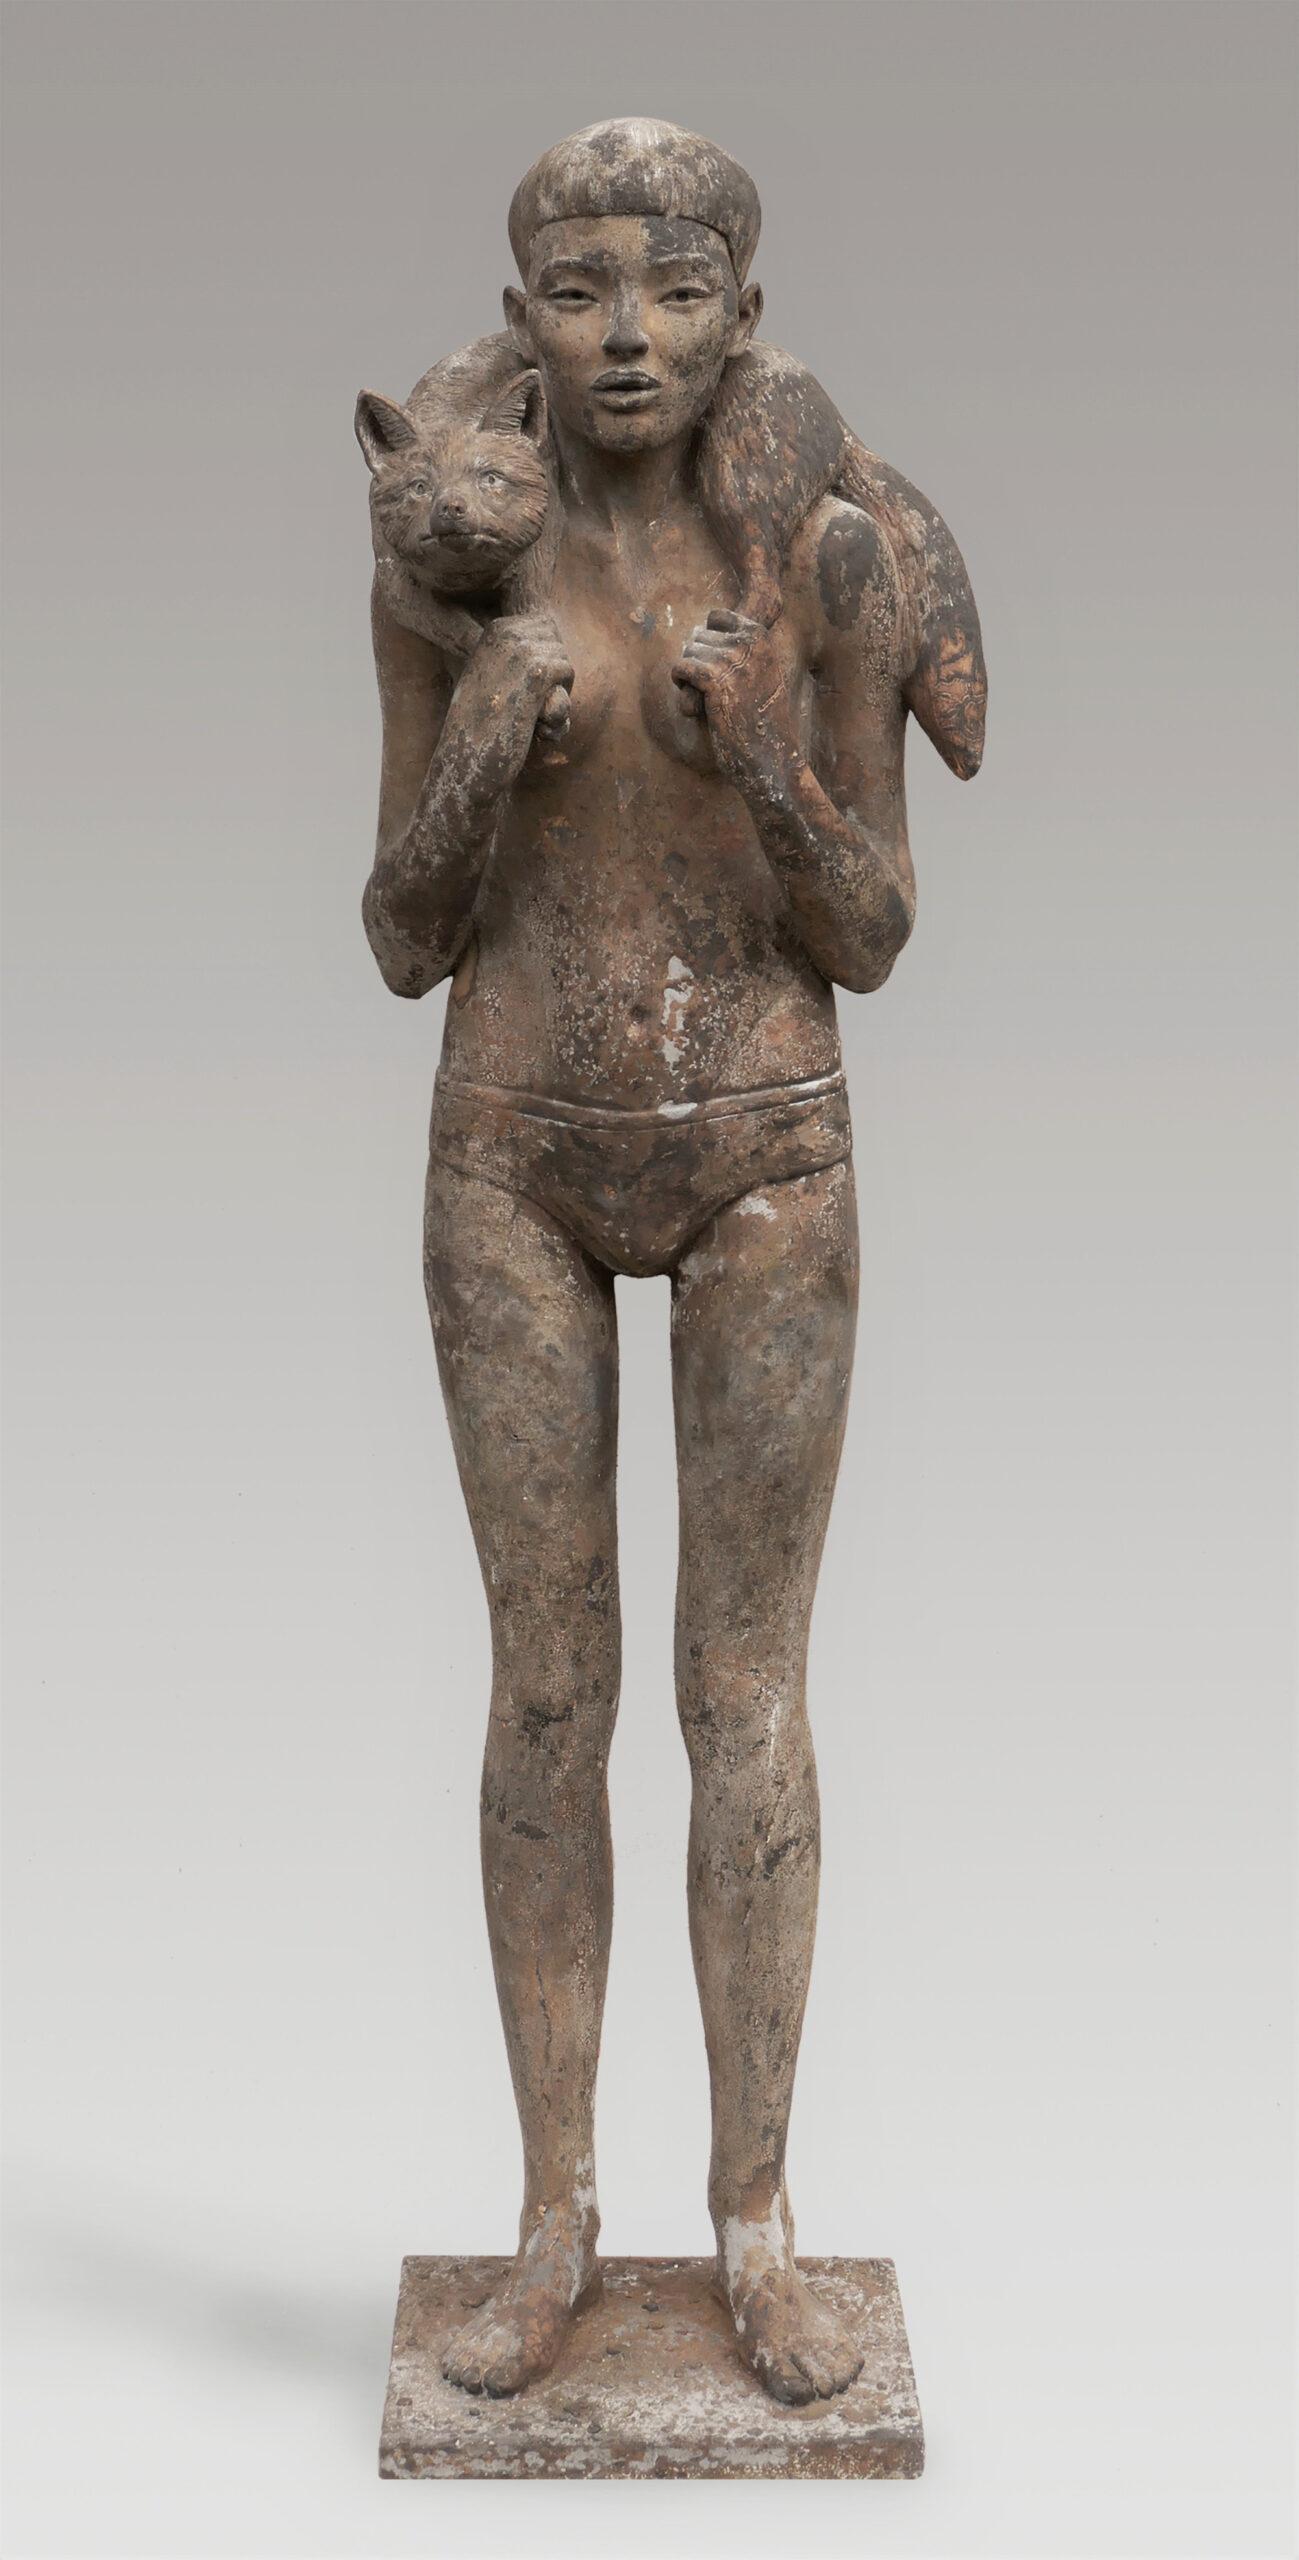 Vos Fox Bronze Sculpture Girl with Fox Figure People Animal 